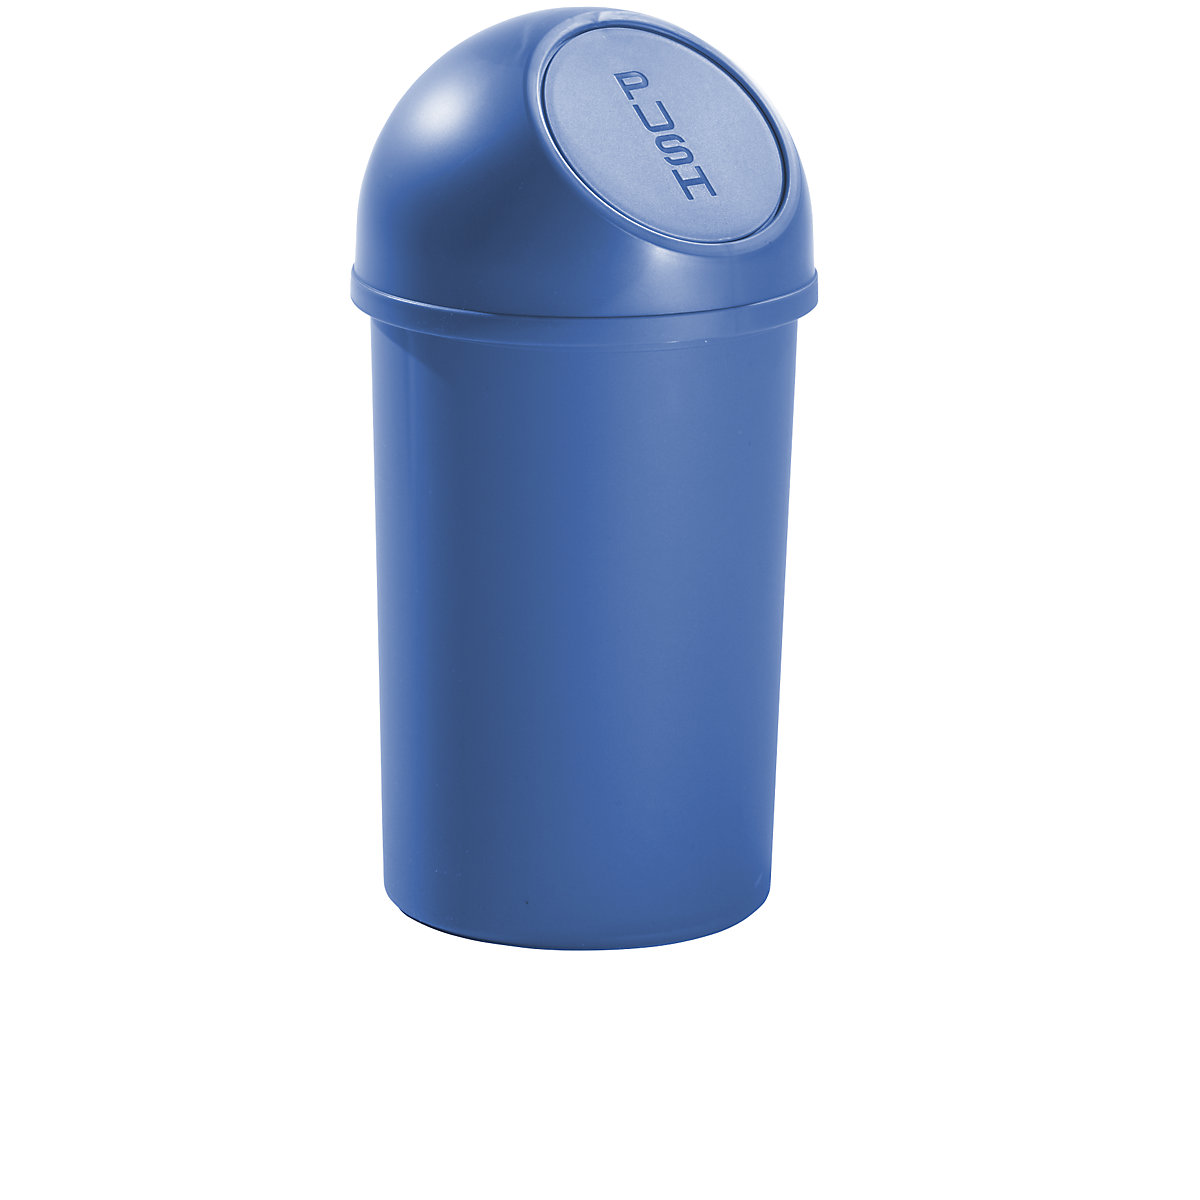 Push-afvalbak van kunststof – helit, inhoud 13 l, VE = 6 stuks, h x Ø = 490 x 252 mm, blauw-5